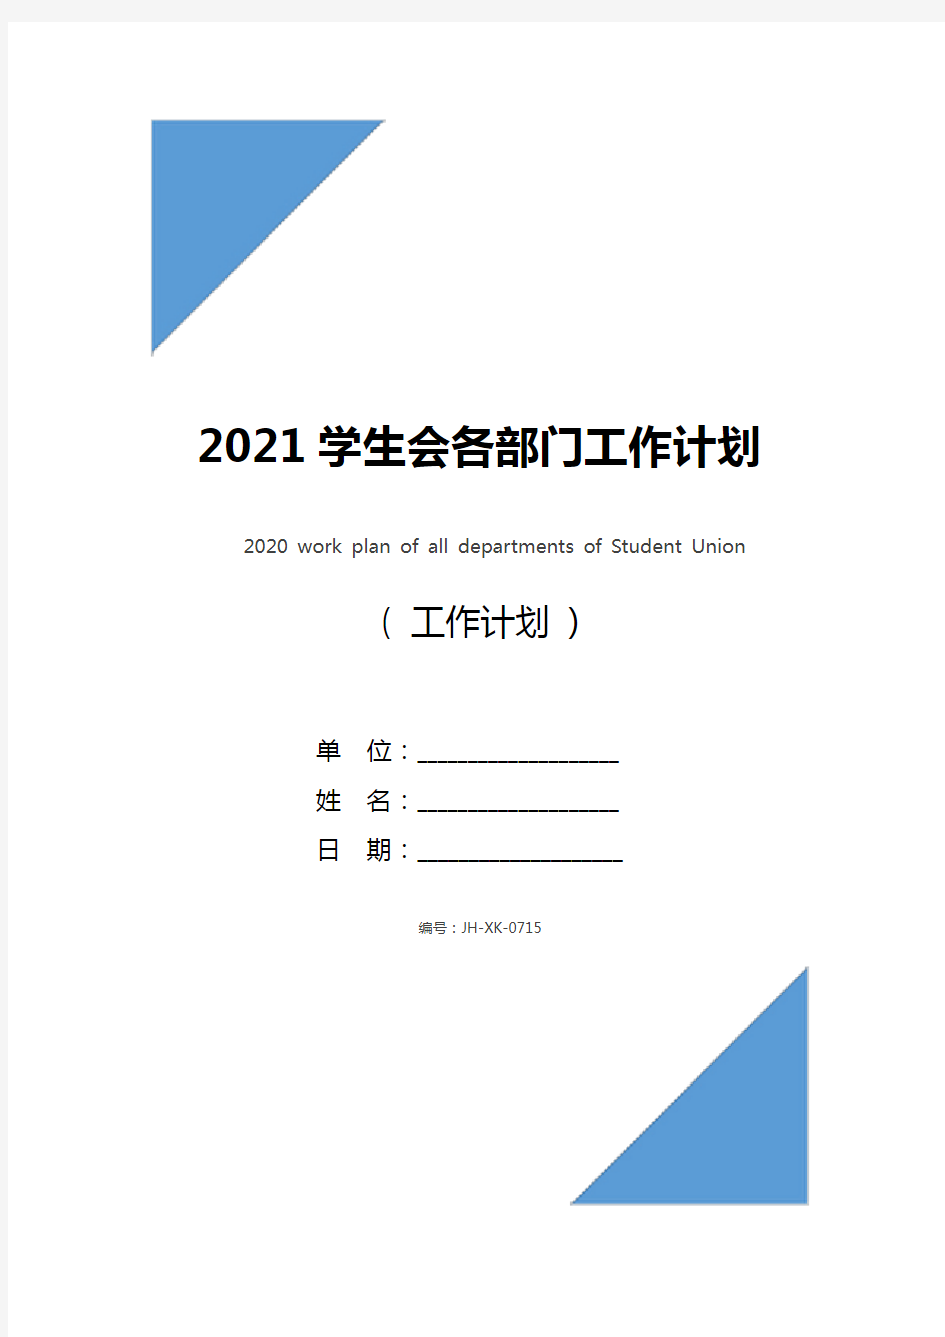 2021学生会各部门工作计划(新版)